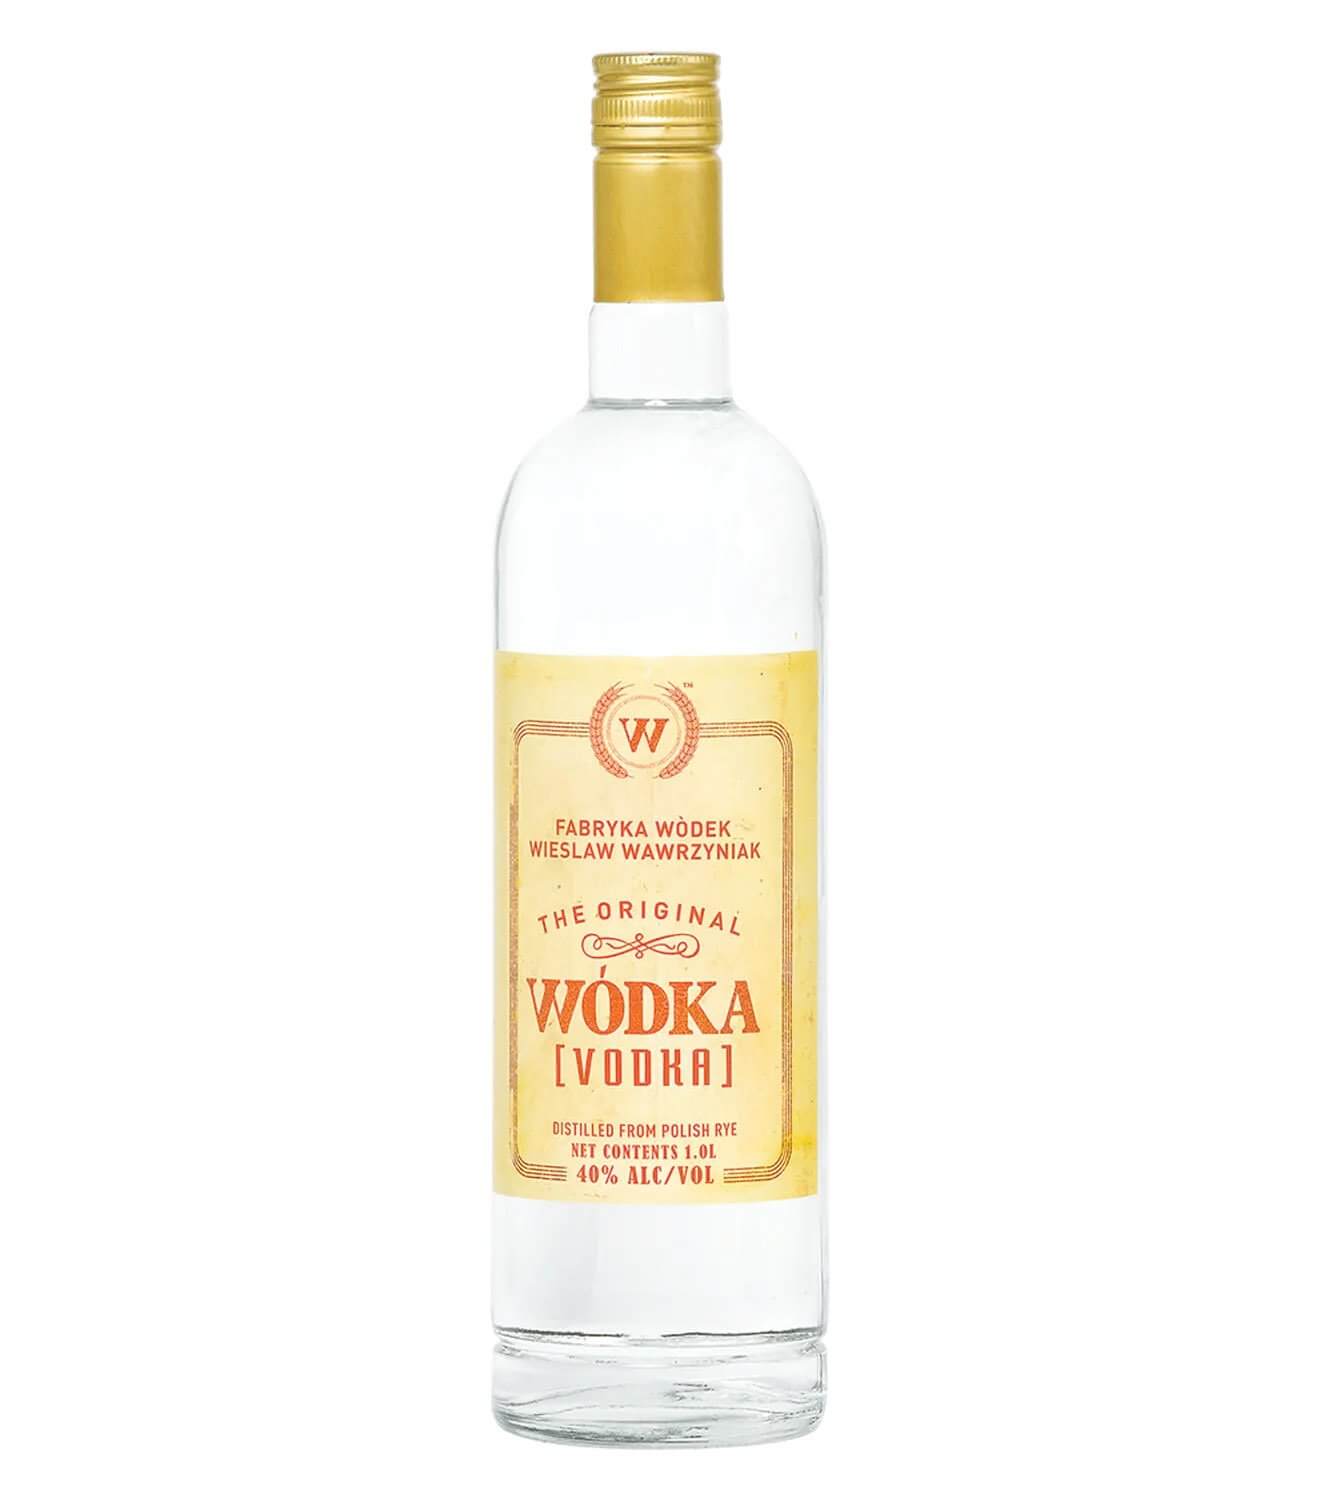 Vodka polonaise : véritable trésor national de la Pologne